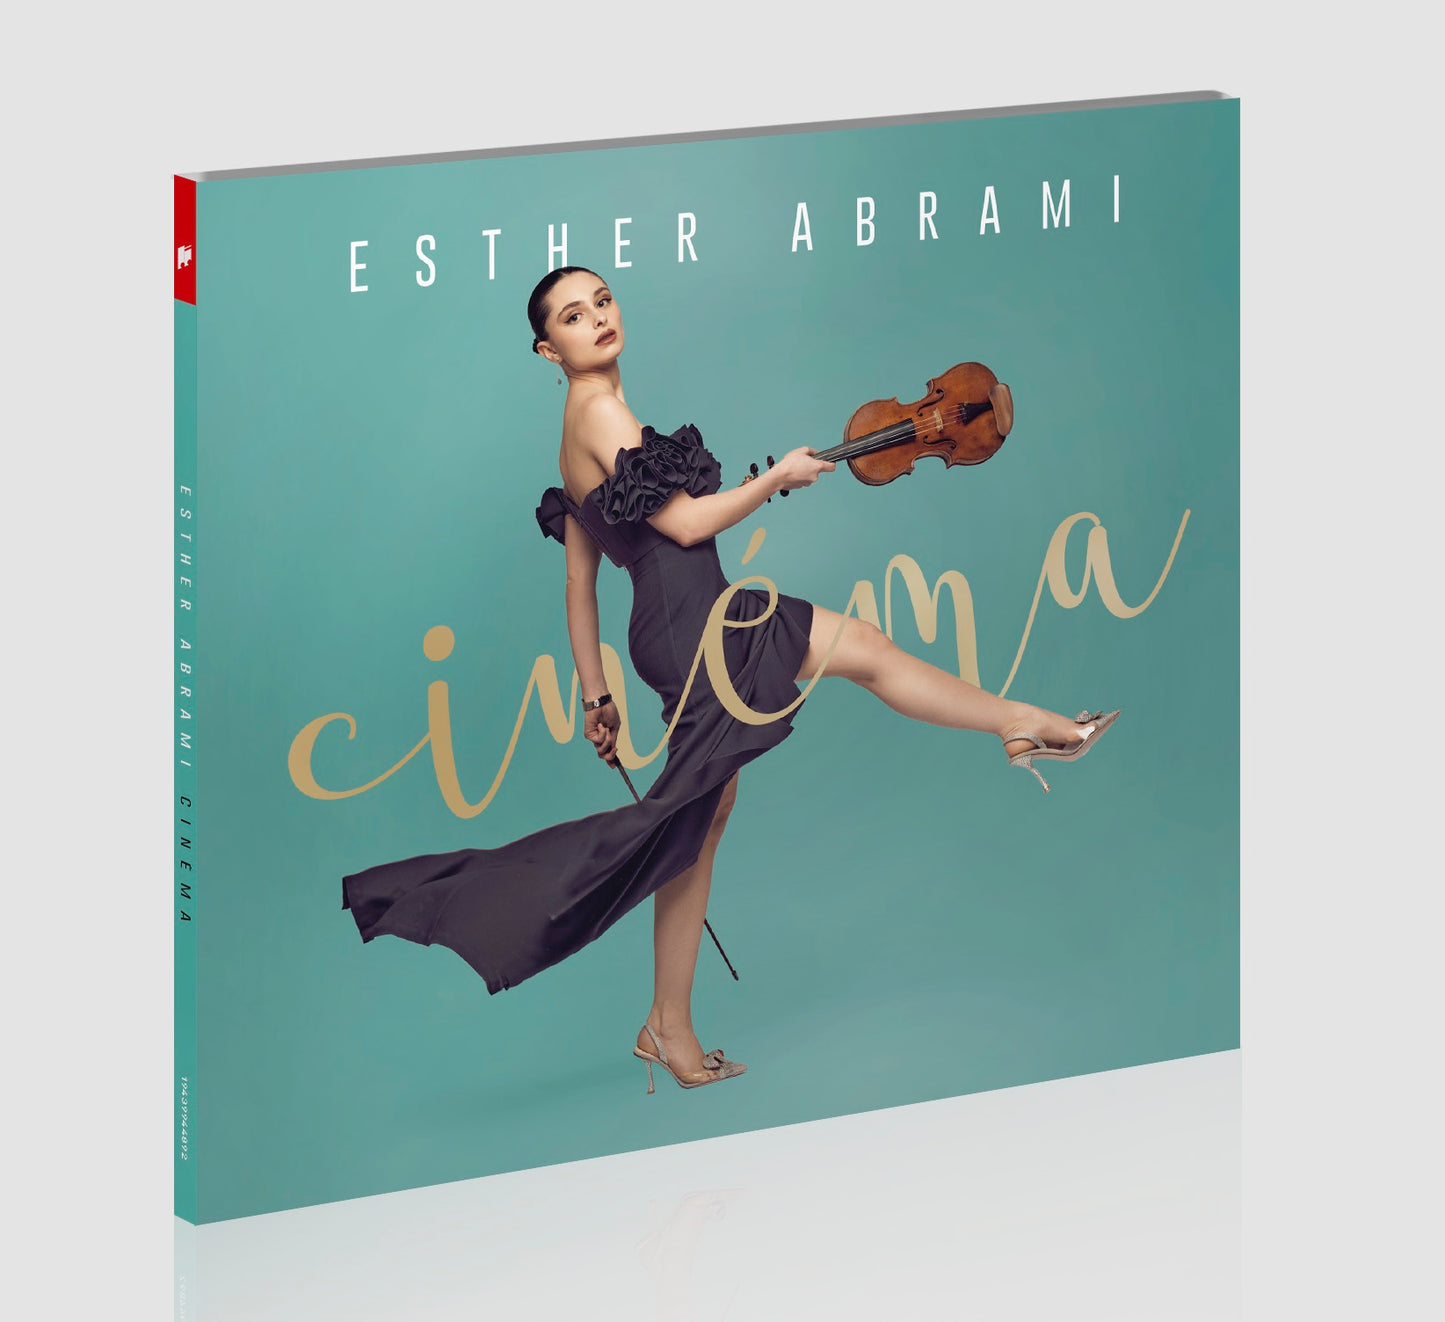 Esther Abrami - Cinéma (limited signed 1 CD, digipac)